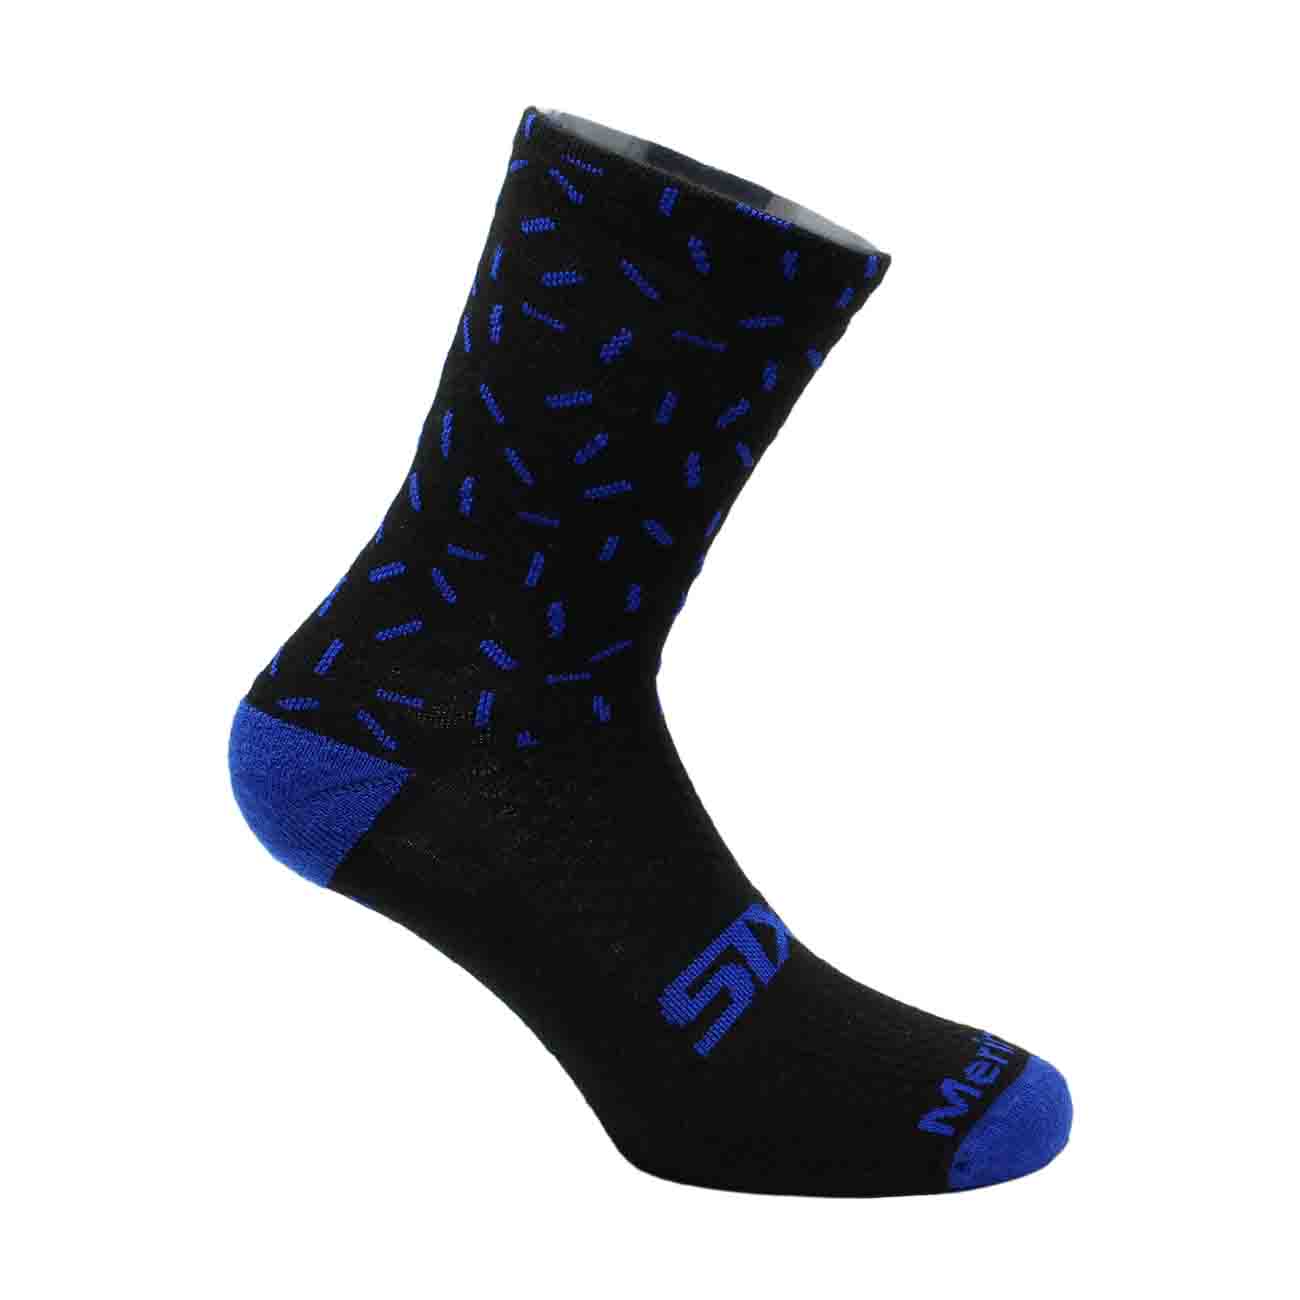 
                SIX2 Cyklistické ponožky klasické - MERINO WOOL - modrá/černá 40-43
            